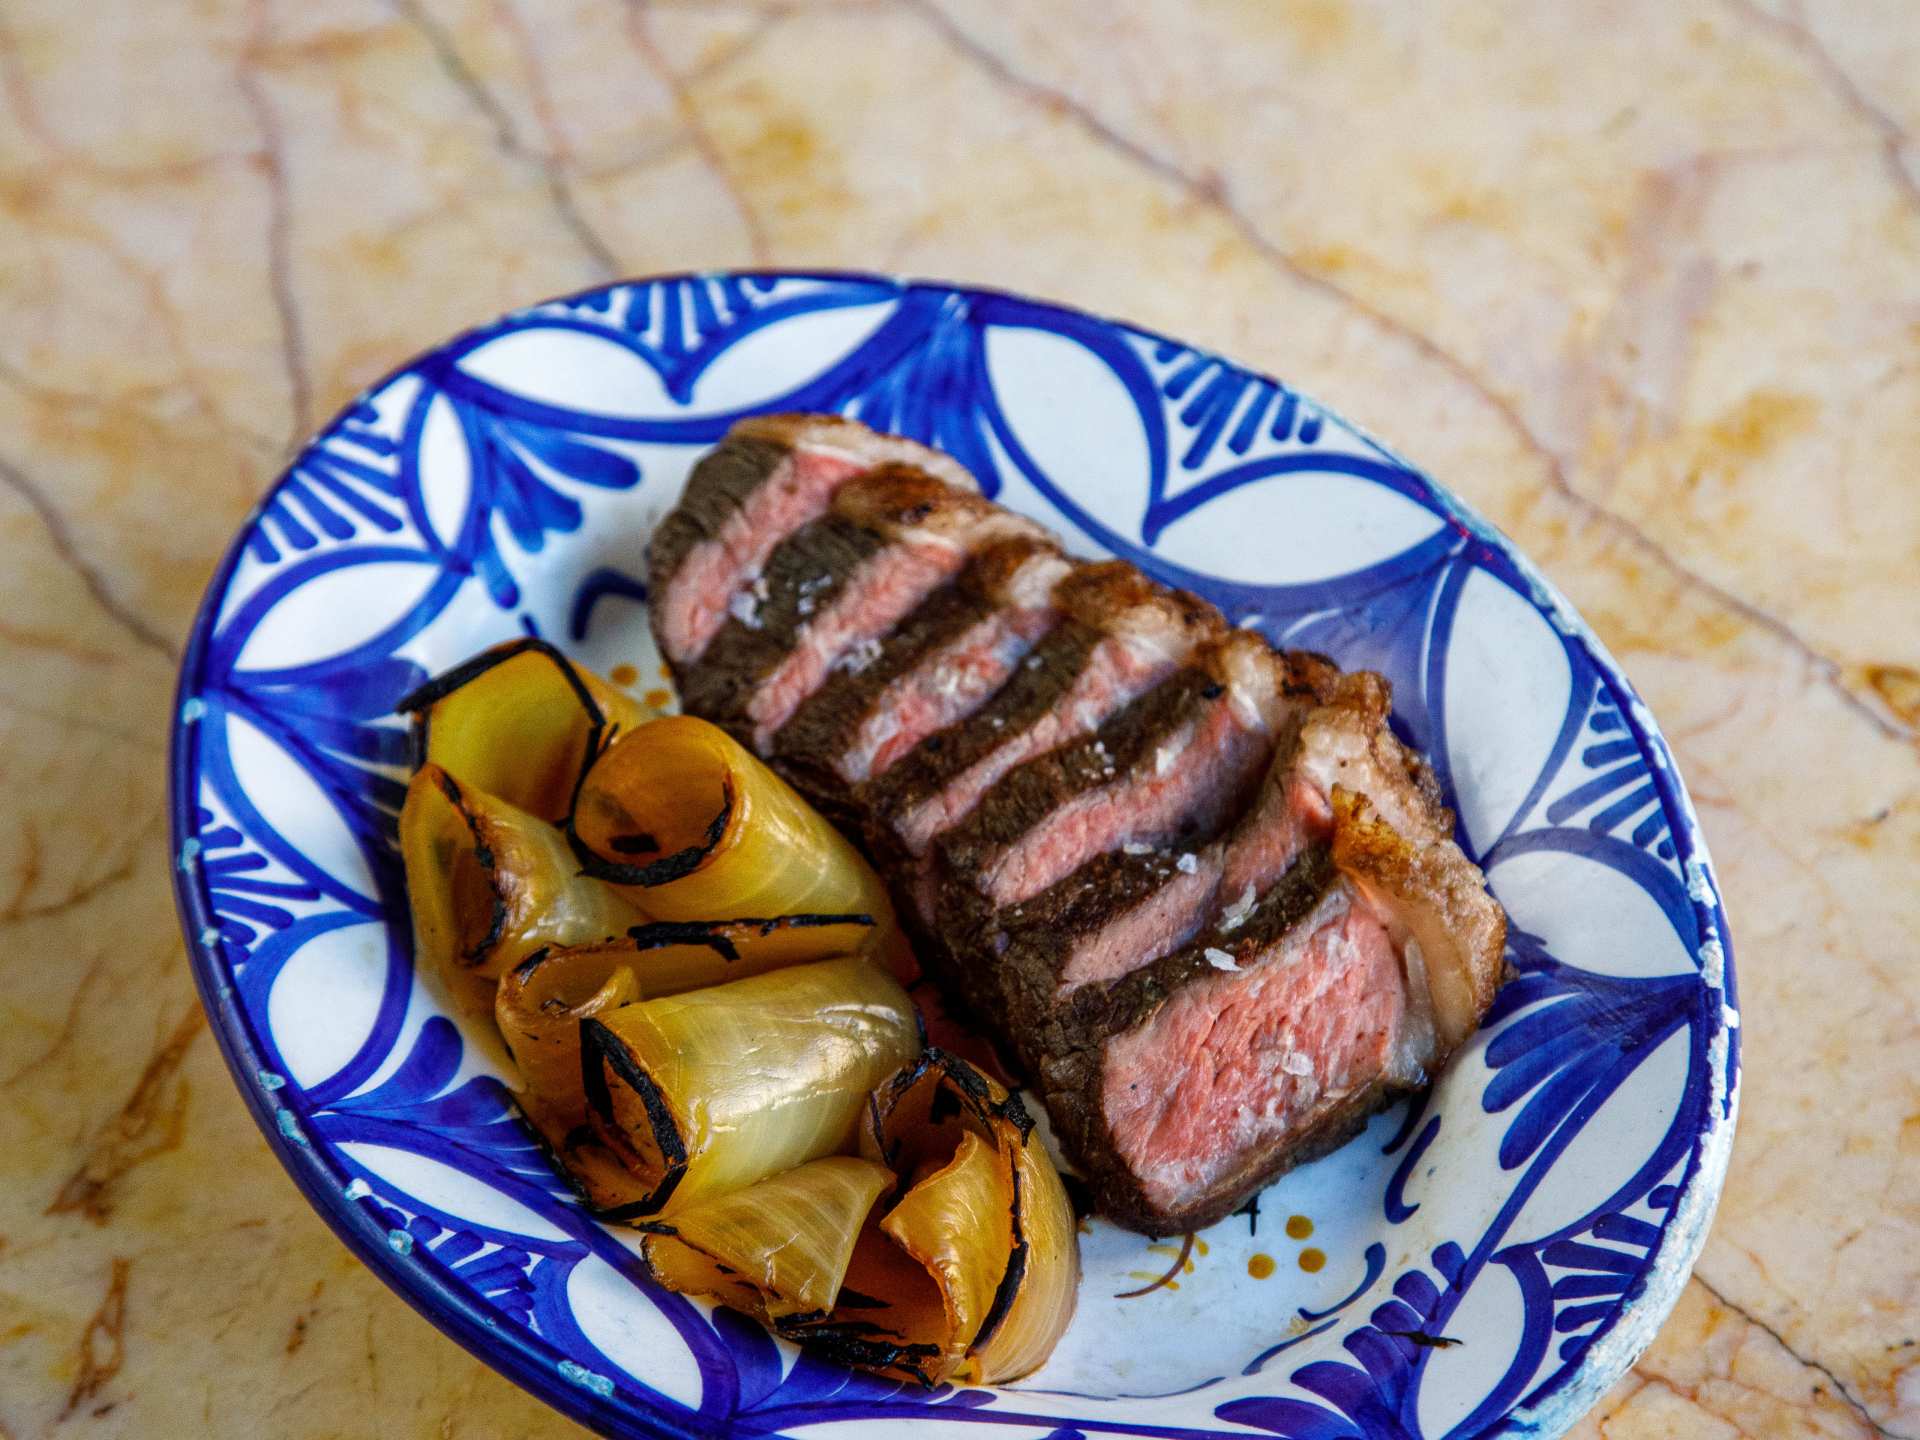 Best restaurants Toronto | Bar Isabel picanha steak